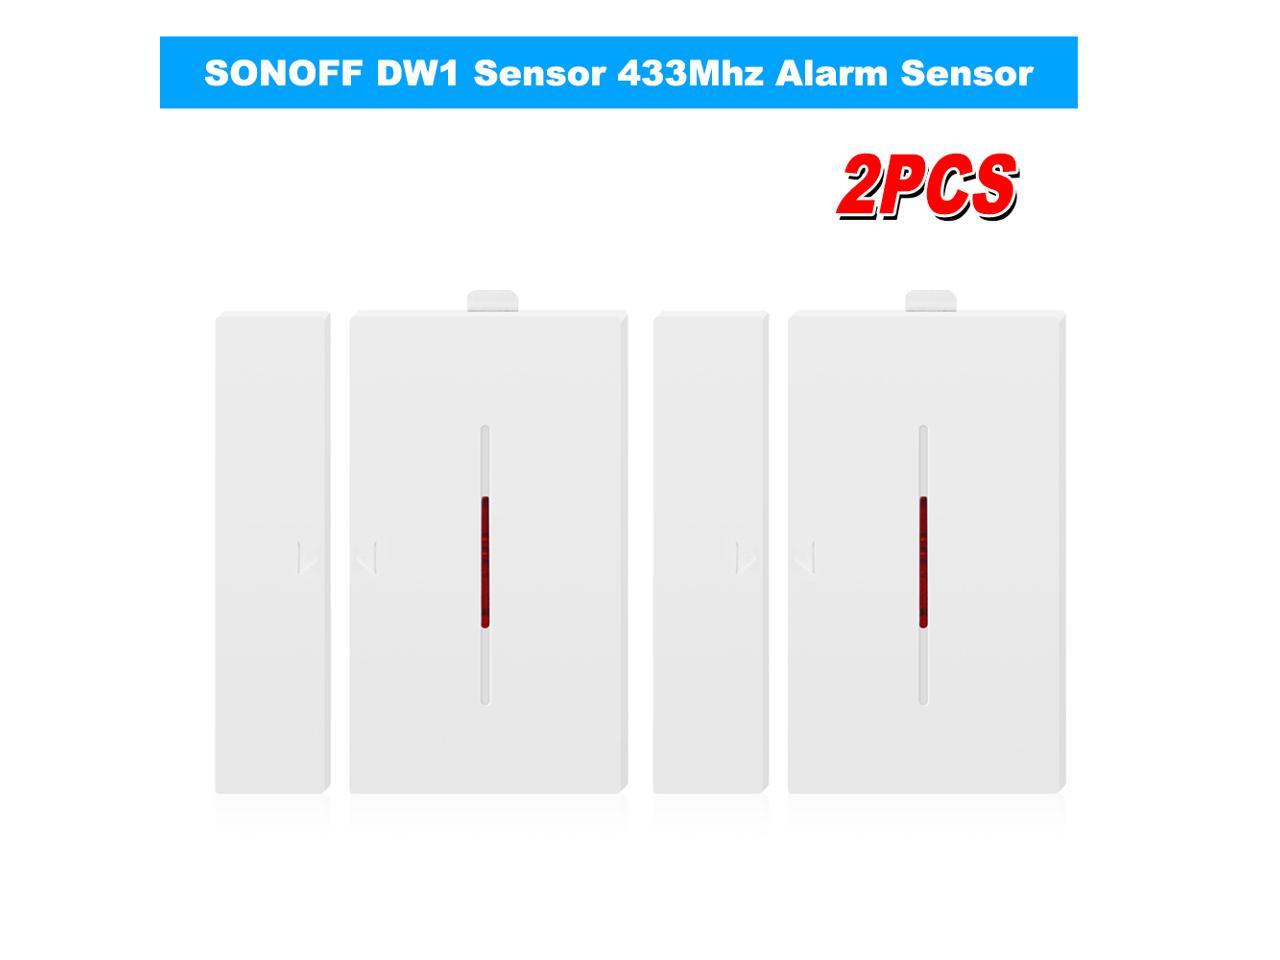 2PCS SONOFF DW1 Sensor 433Mhz Door Window Alarm Sensor Wireless Automation W1X3 